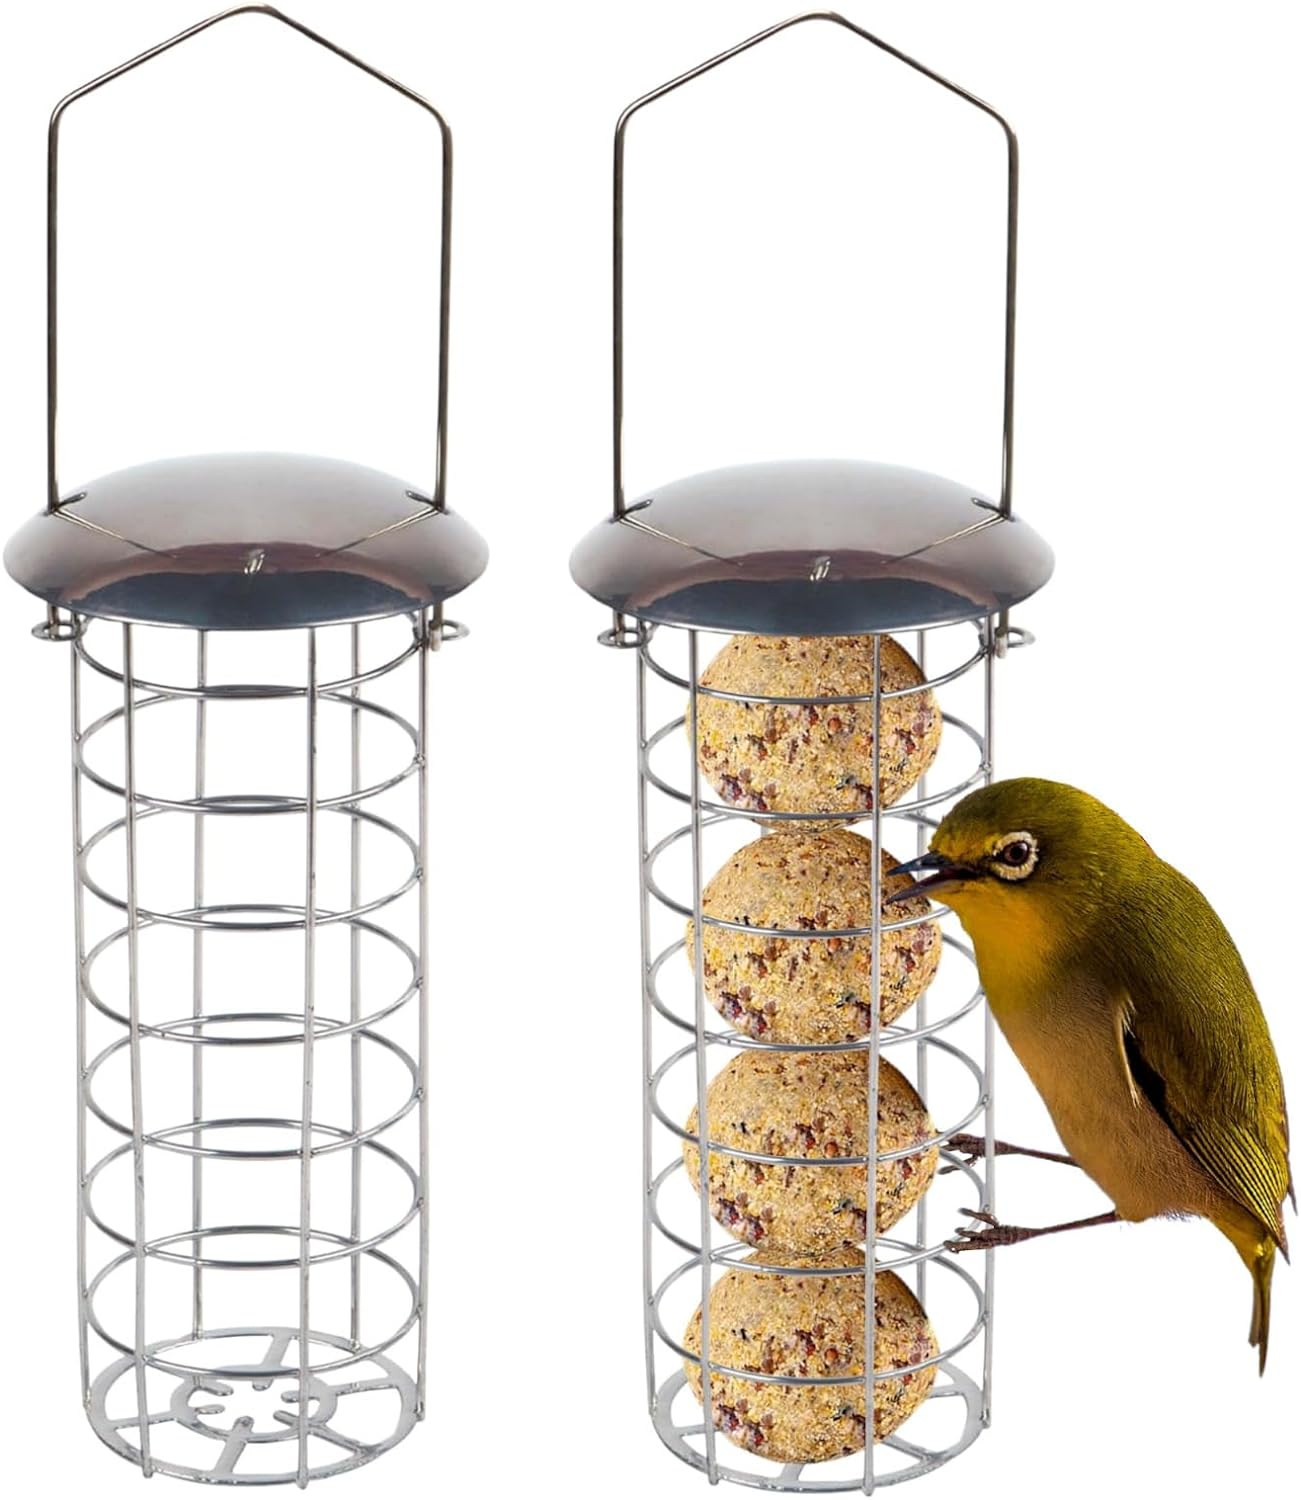 ADEPTNA Deluxe Set of 2 Garden Hanging Wild Bird Feeder Container Outdoor - Water Resistant Great for Attracting Birds (FAT BALL FEEDER)